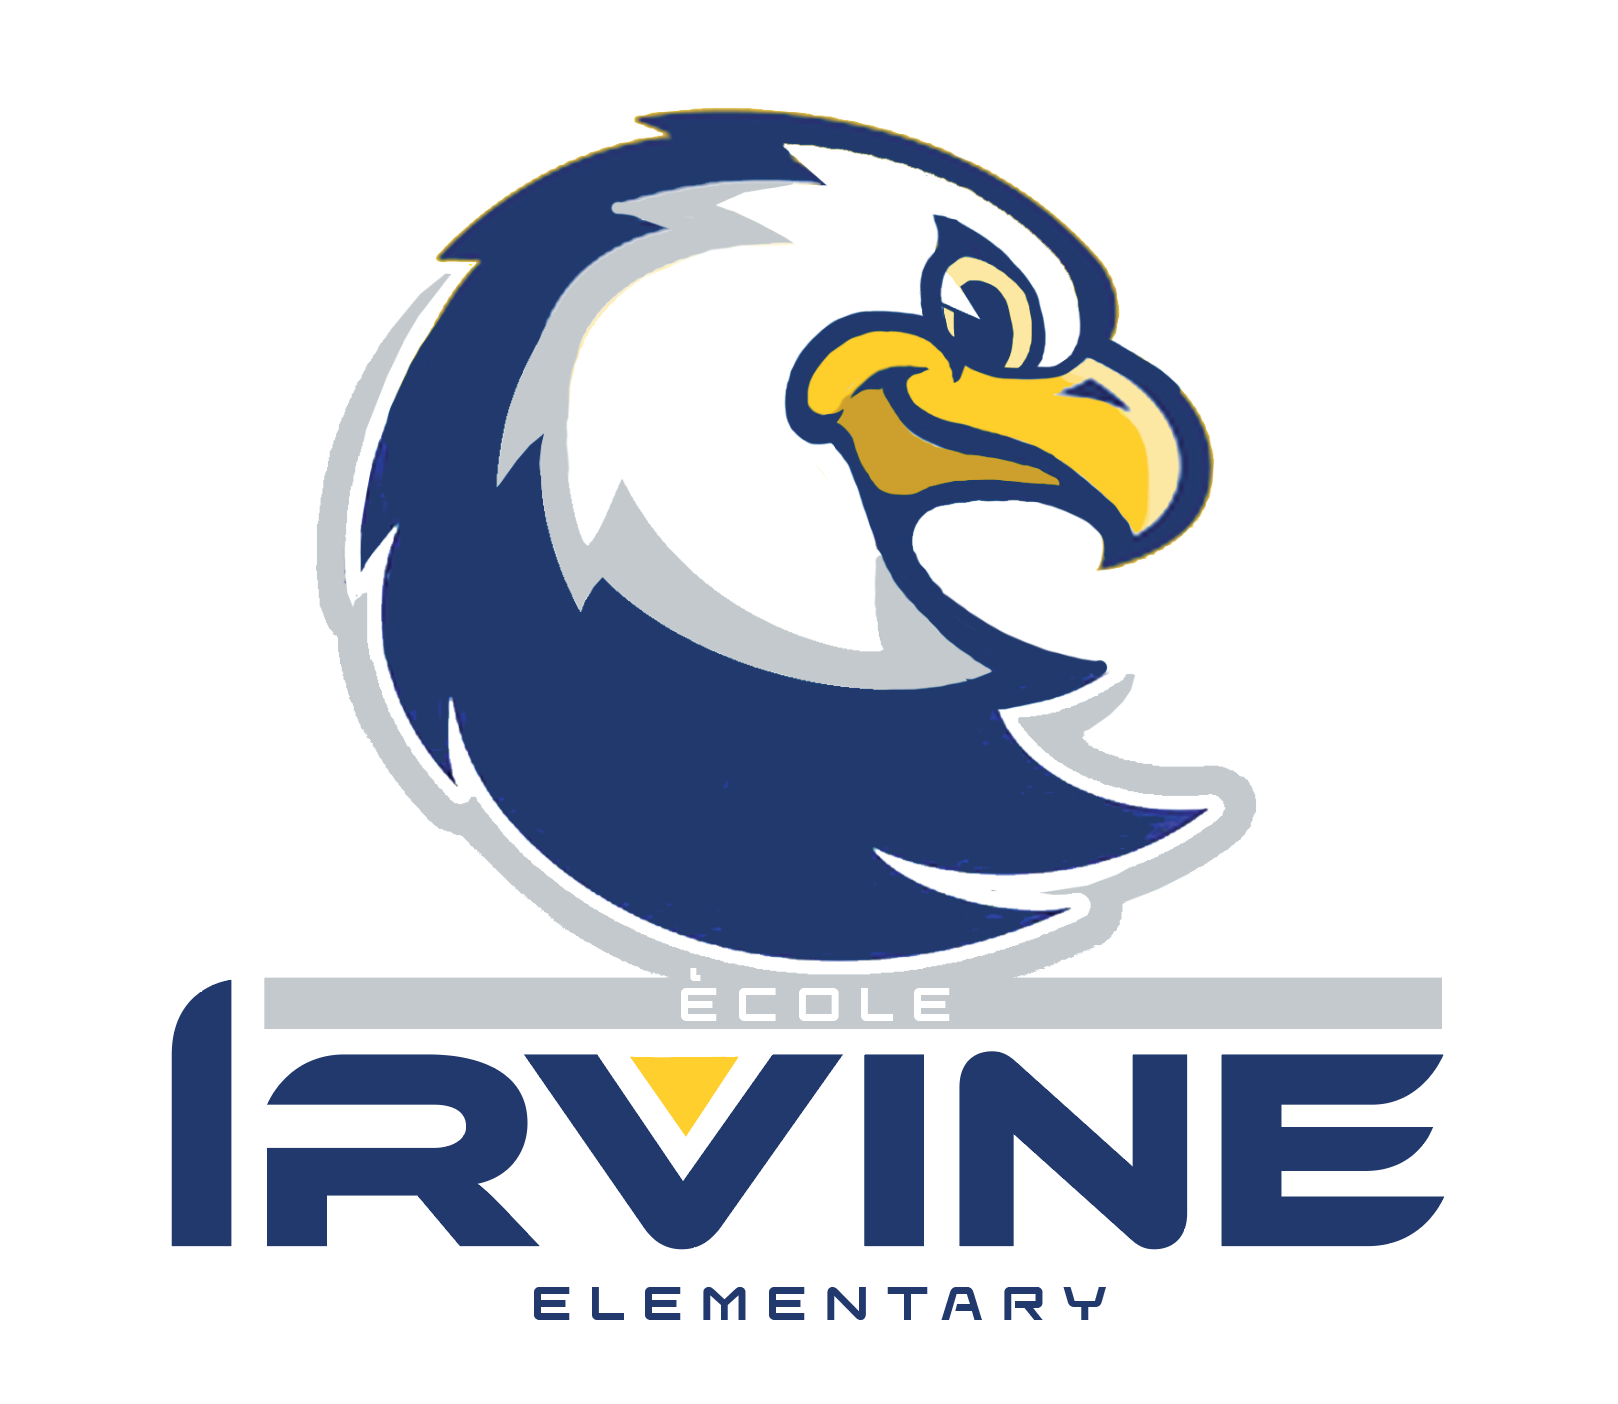 École Irvine Elementary School logo